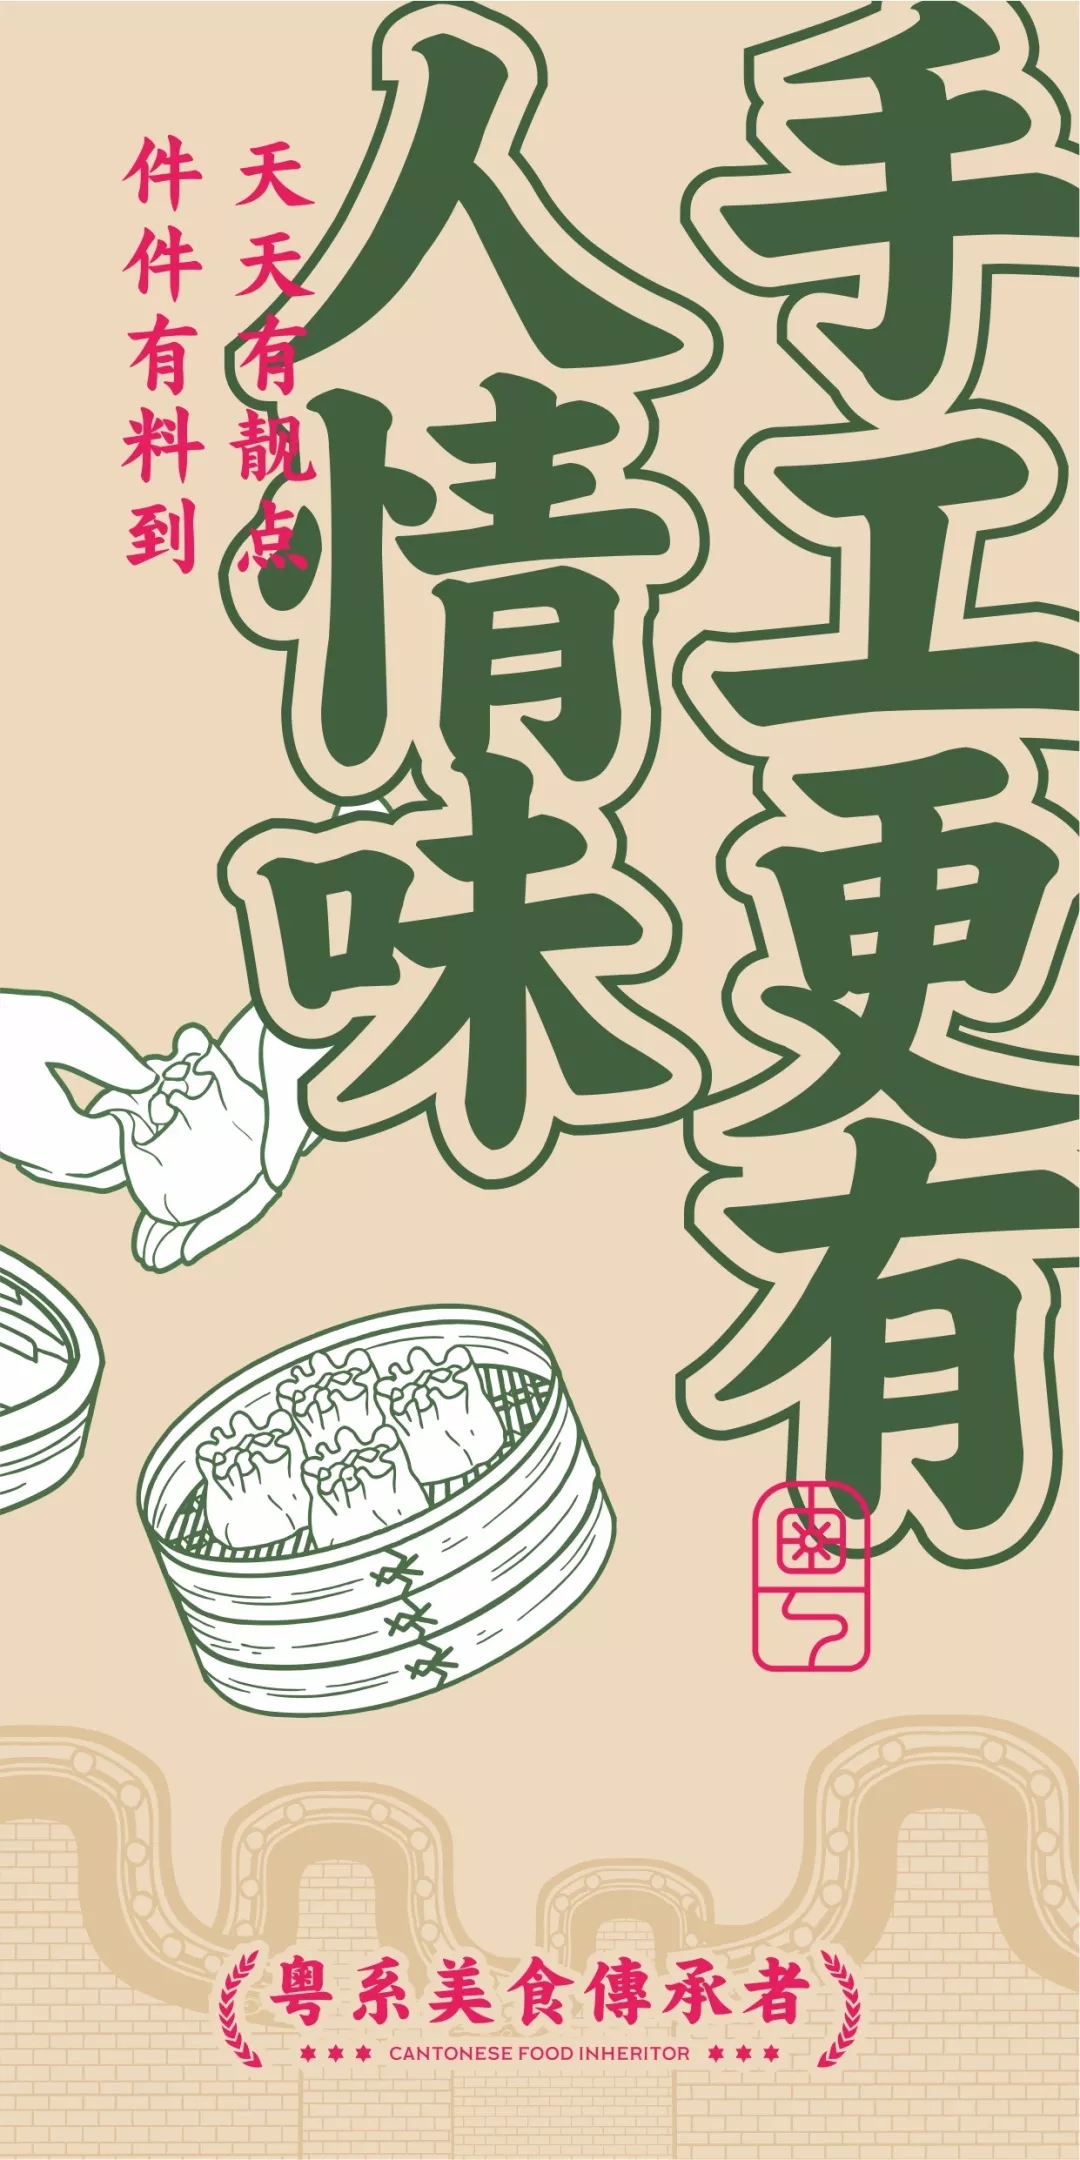 深圳连锁餐饮品牌趣茗轩广告宣传语设计